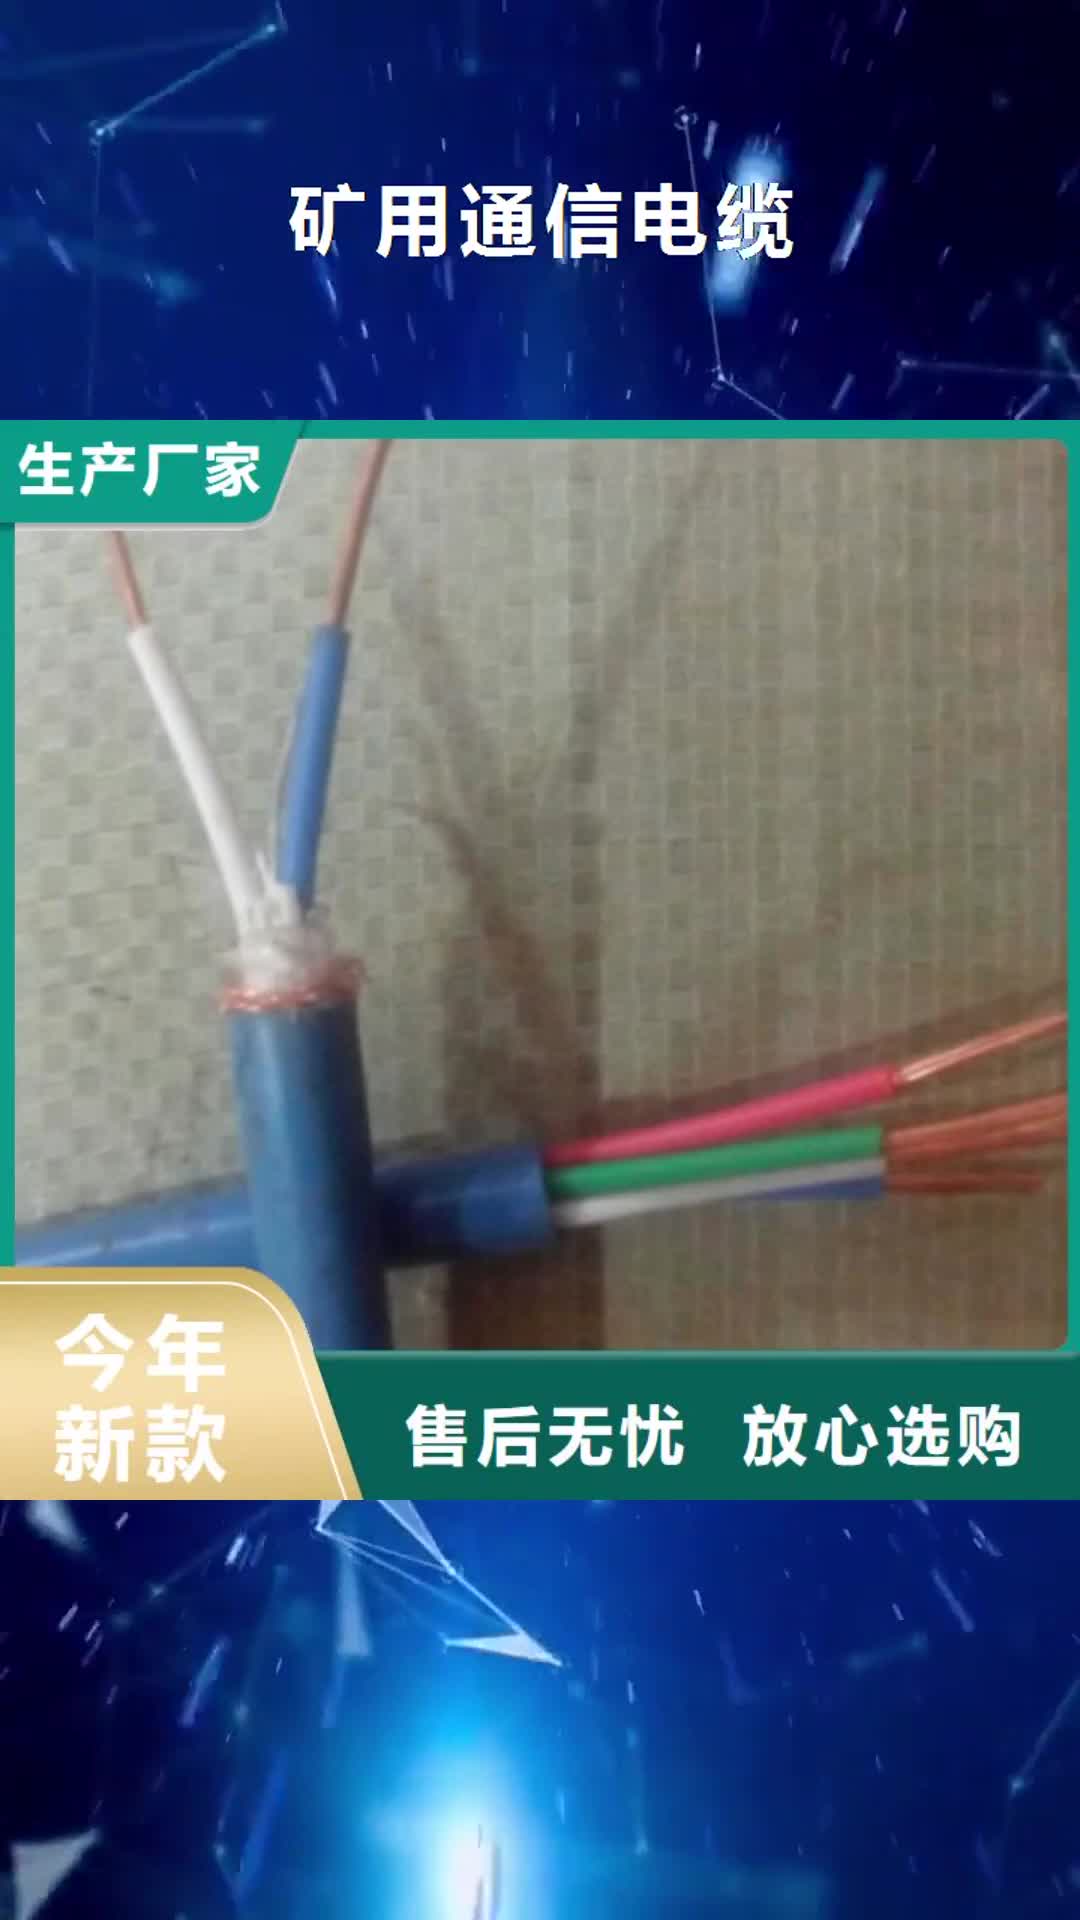 丽水【矿用通信电缆】计算机电缆工艺成熟